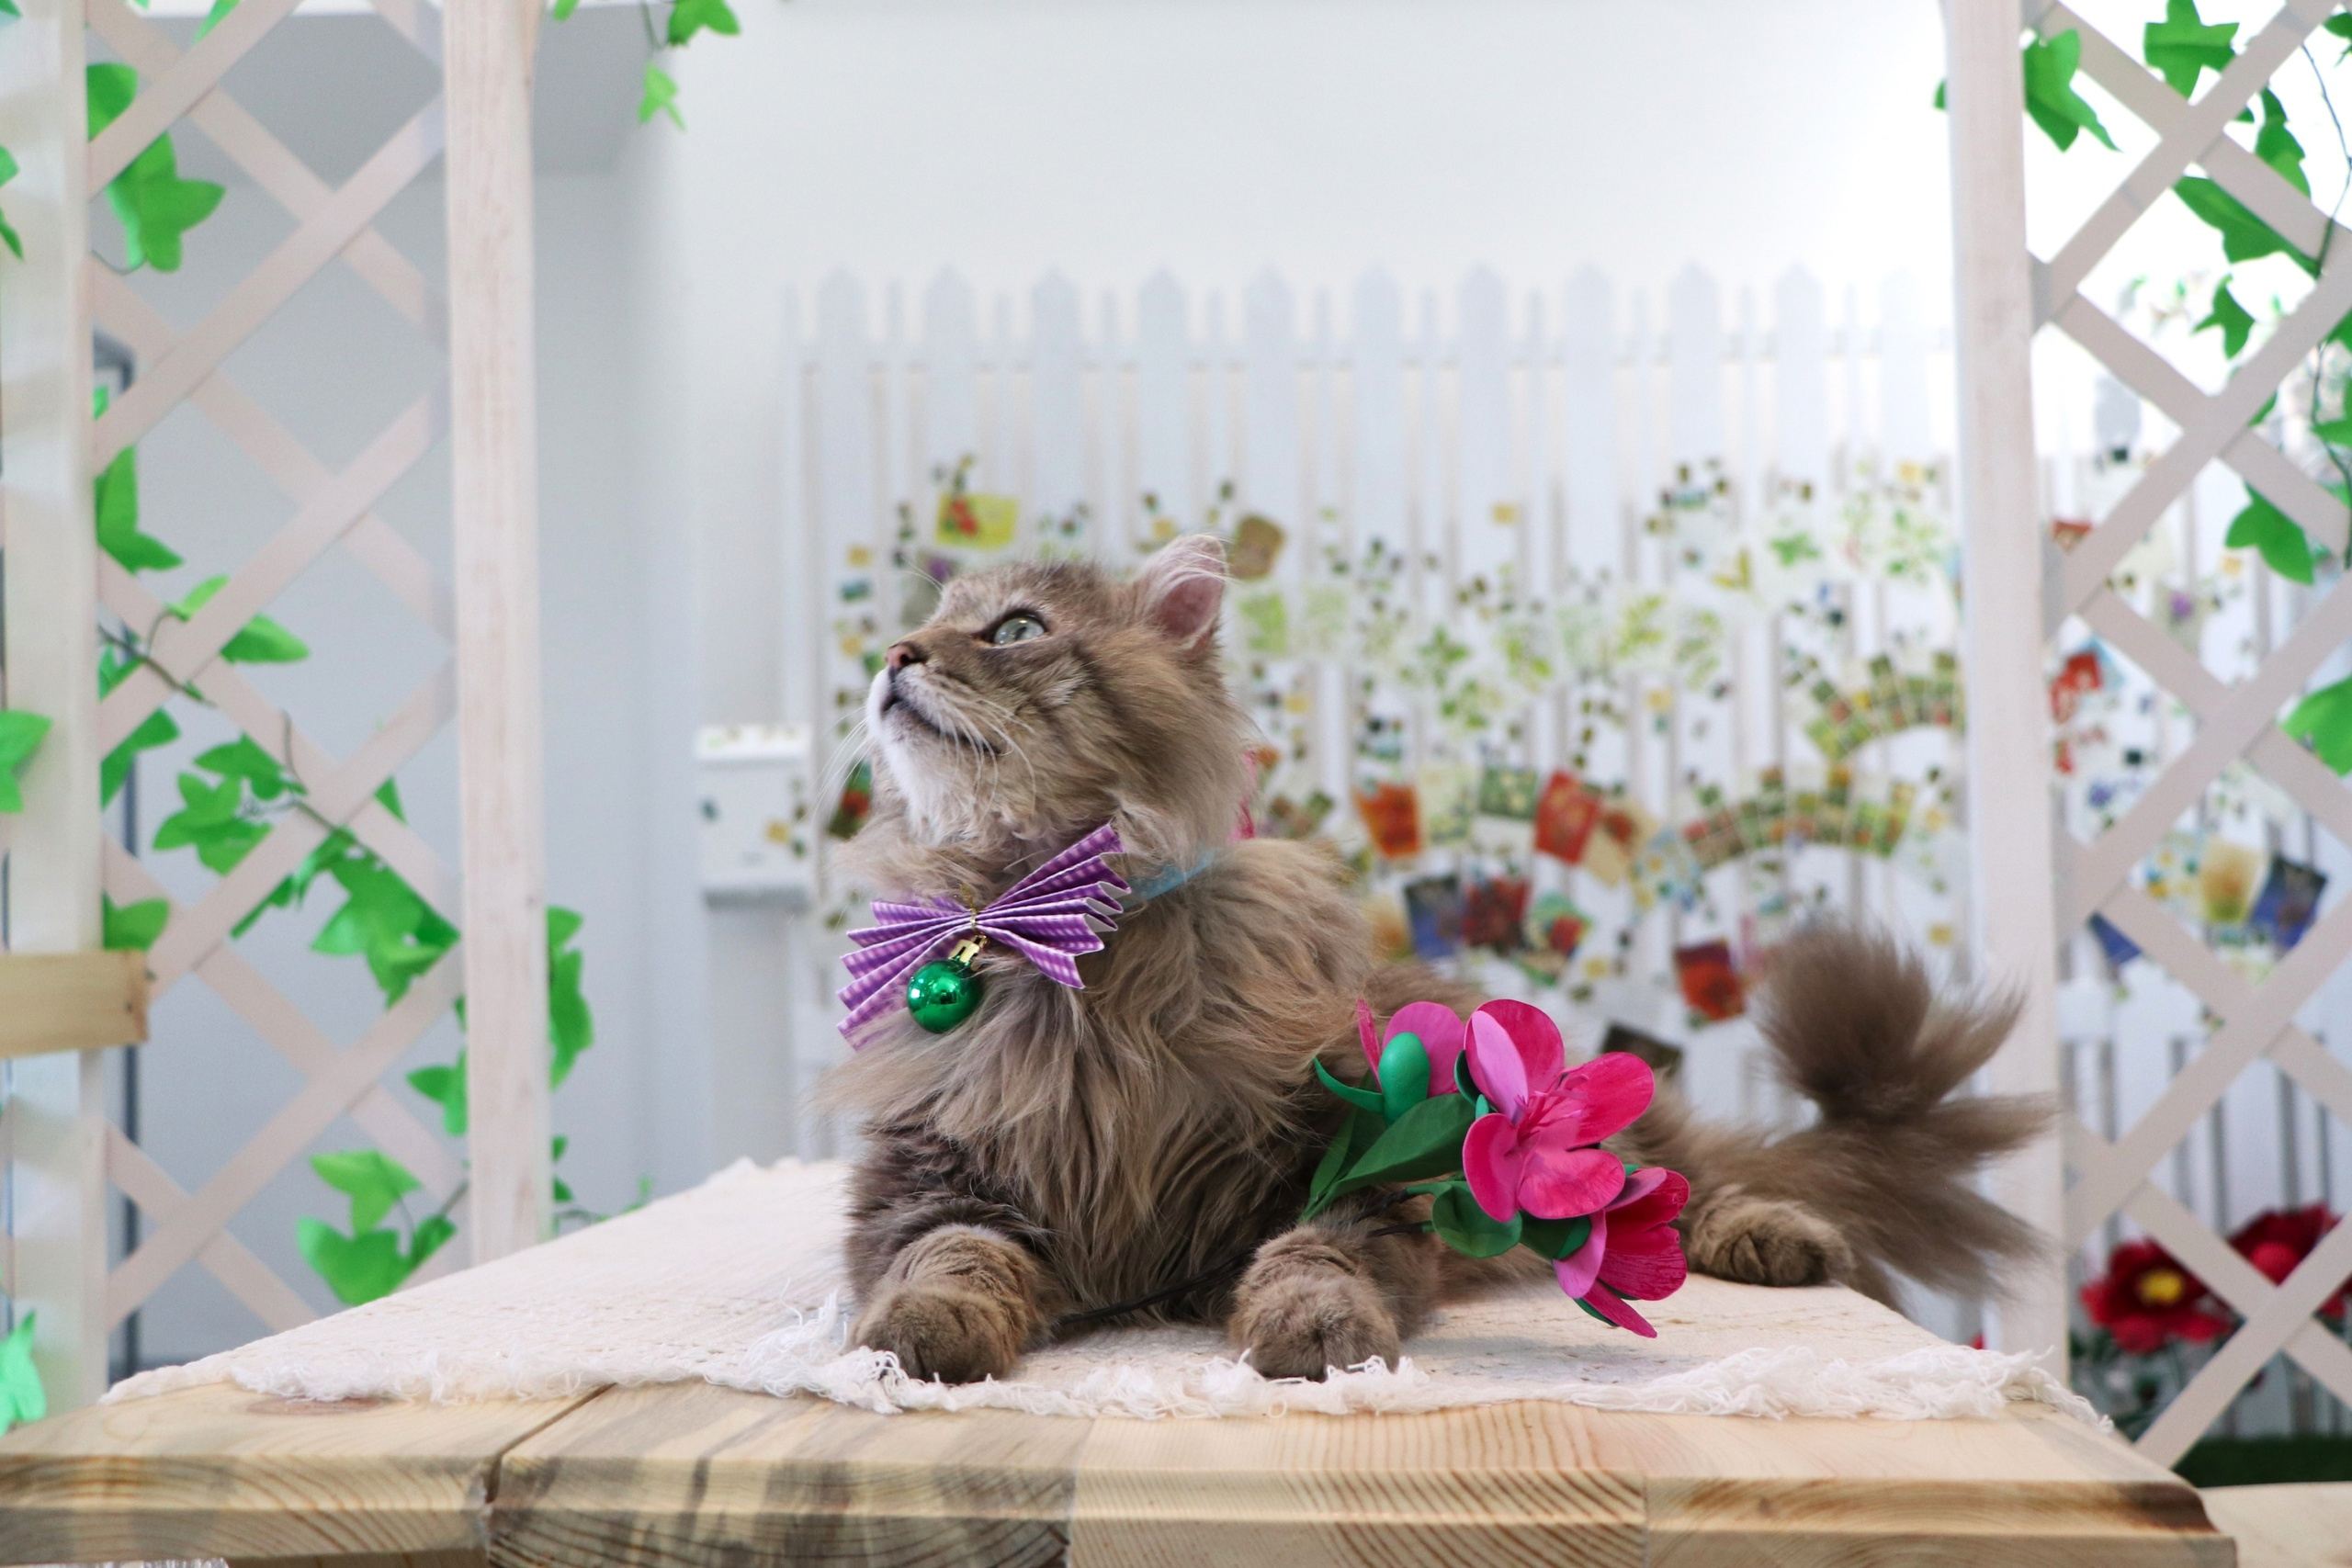 Работает за еду. В Алтайский краеведческий музей наняли кота. Показываем хвостатого экскурсовода